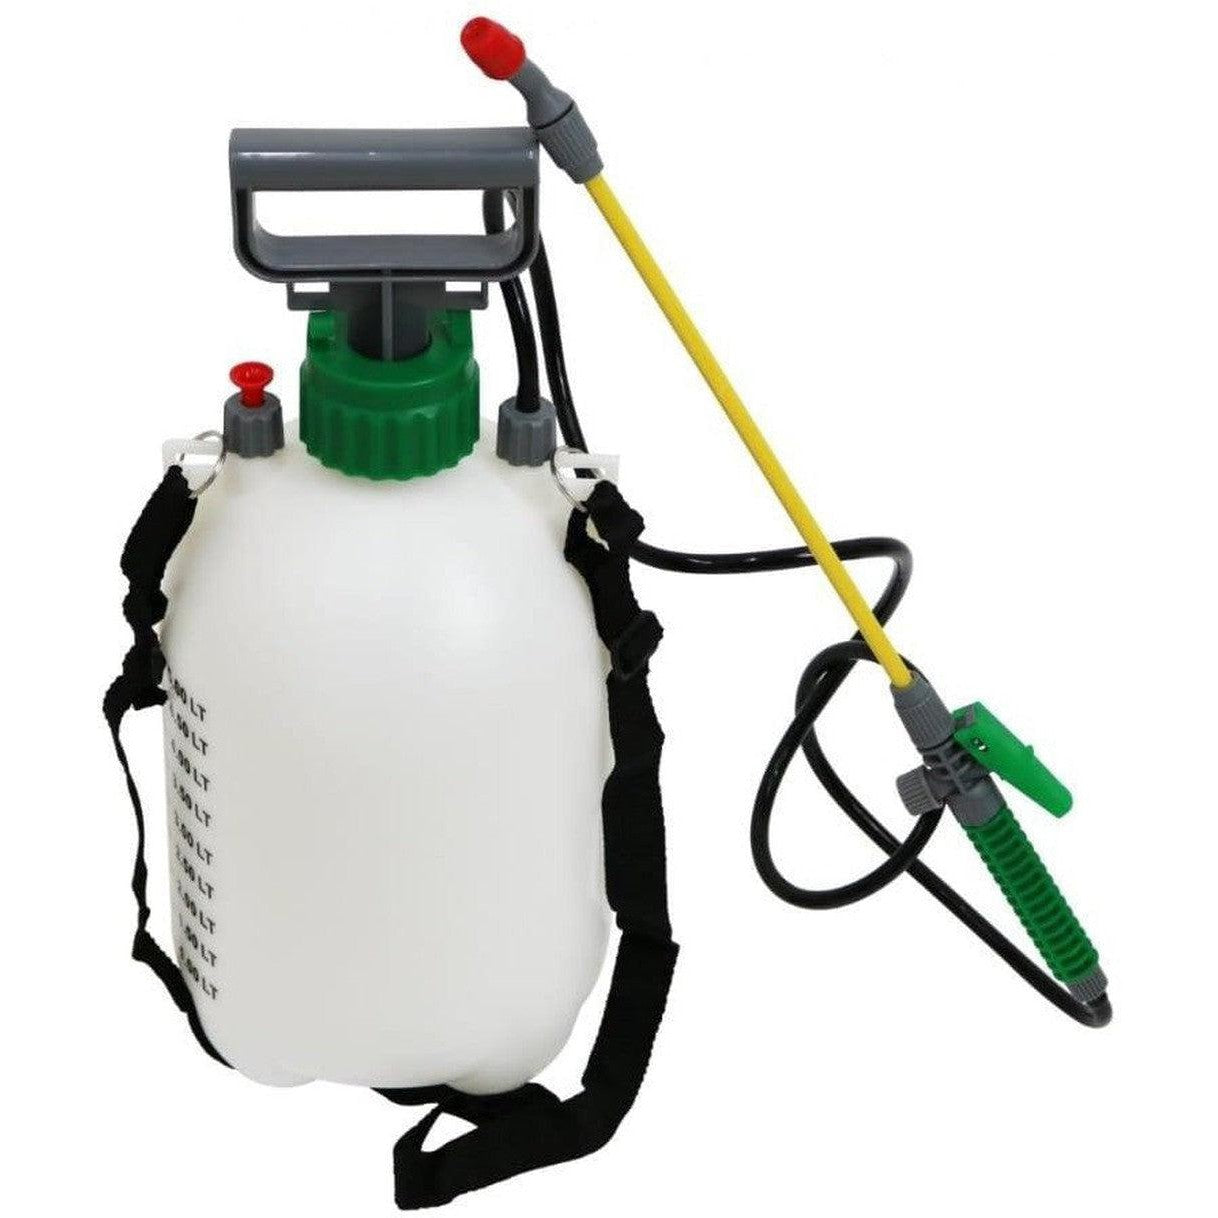 Pressure Sprayer5 Liter-Cleaning Supplies-Other-Star Light Kuwait